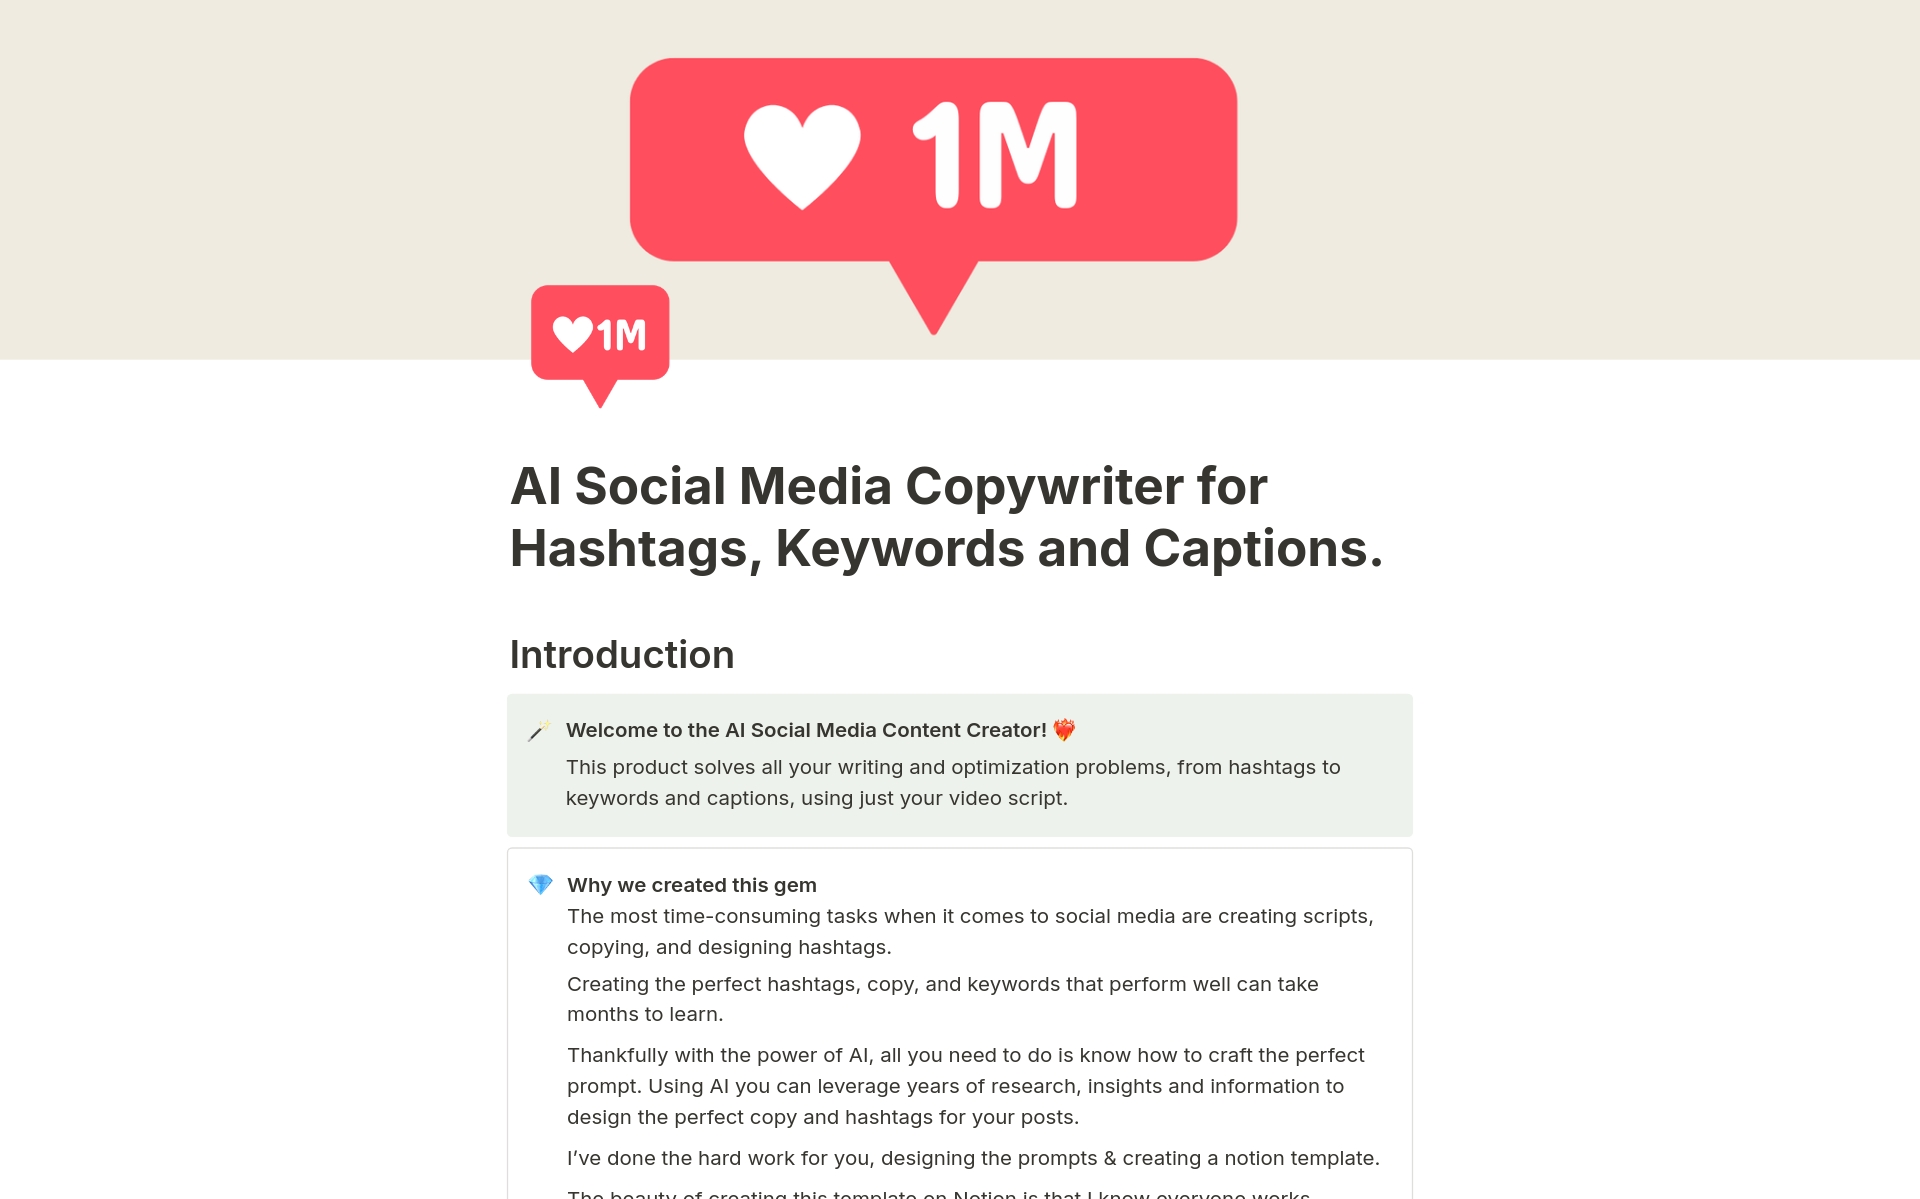 Vista previa de una plantilla para AI Social Media Copywriter Hashtags & Hooks